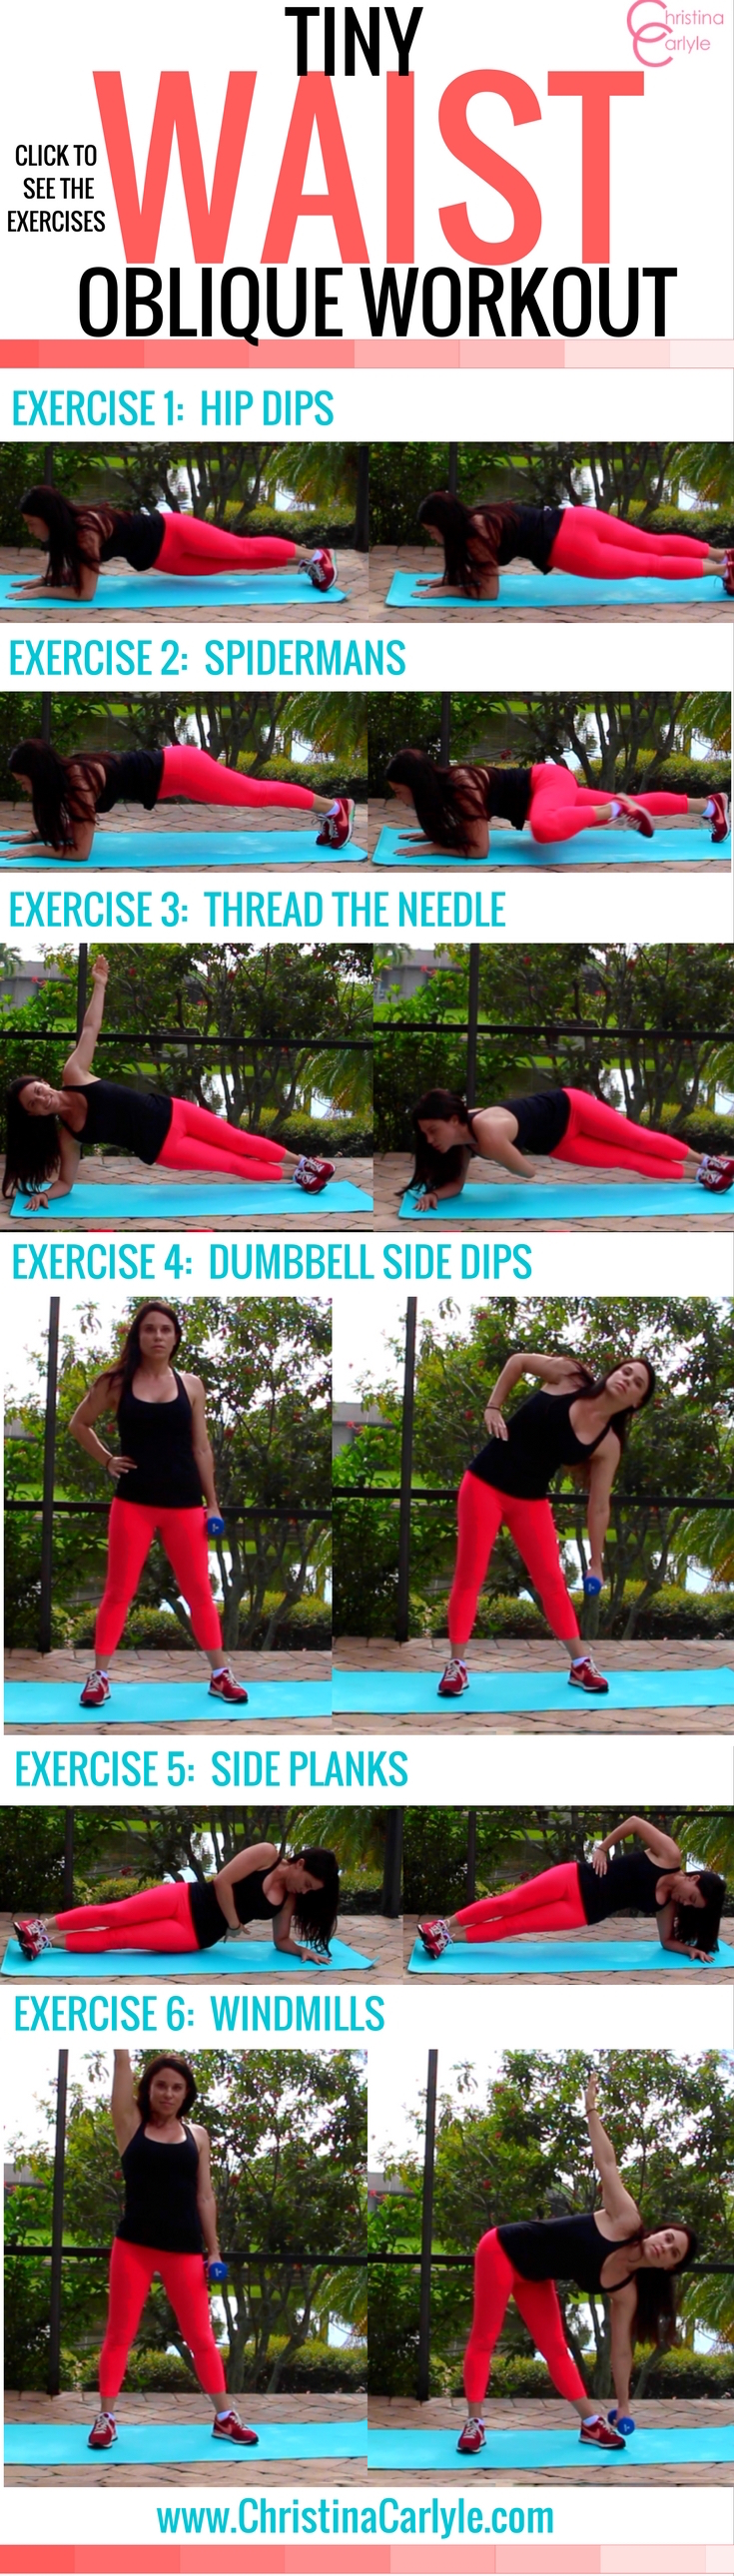 workouts-for-women-oblique-exercises